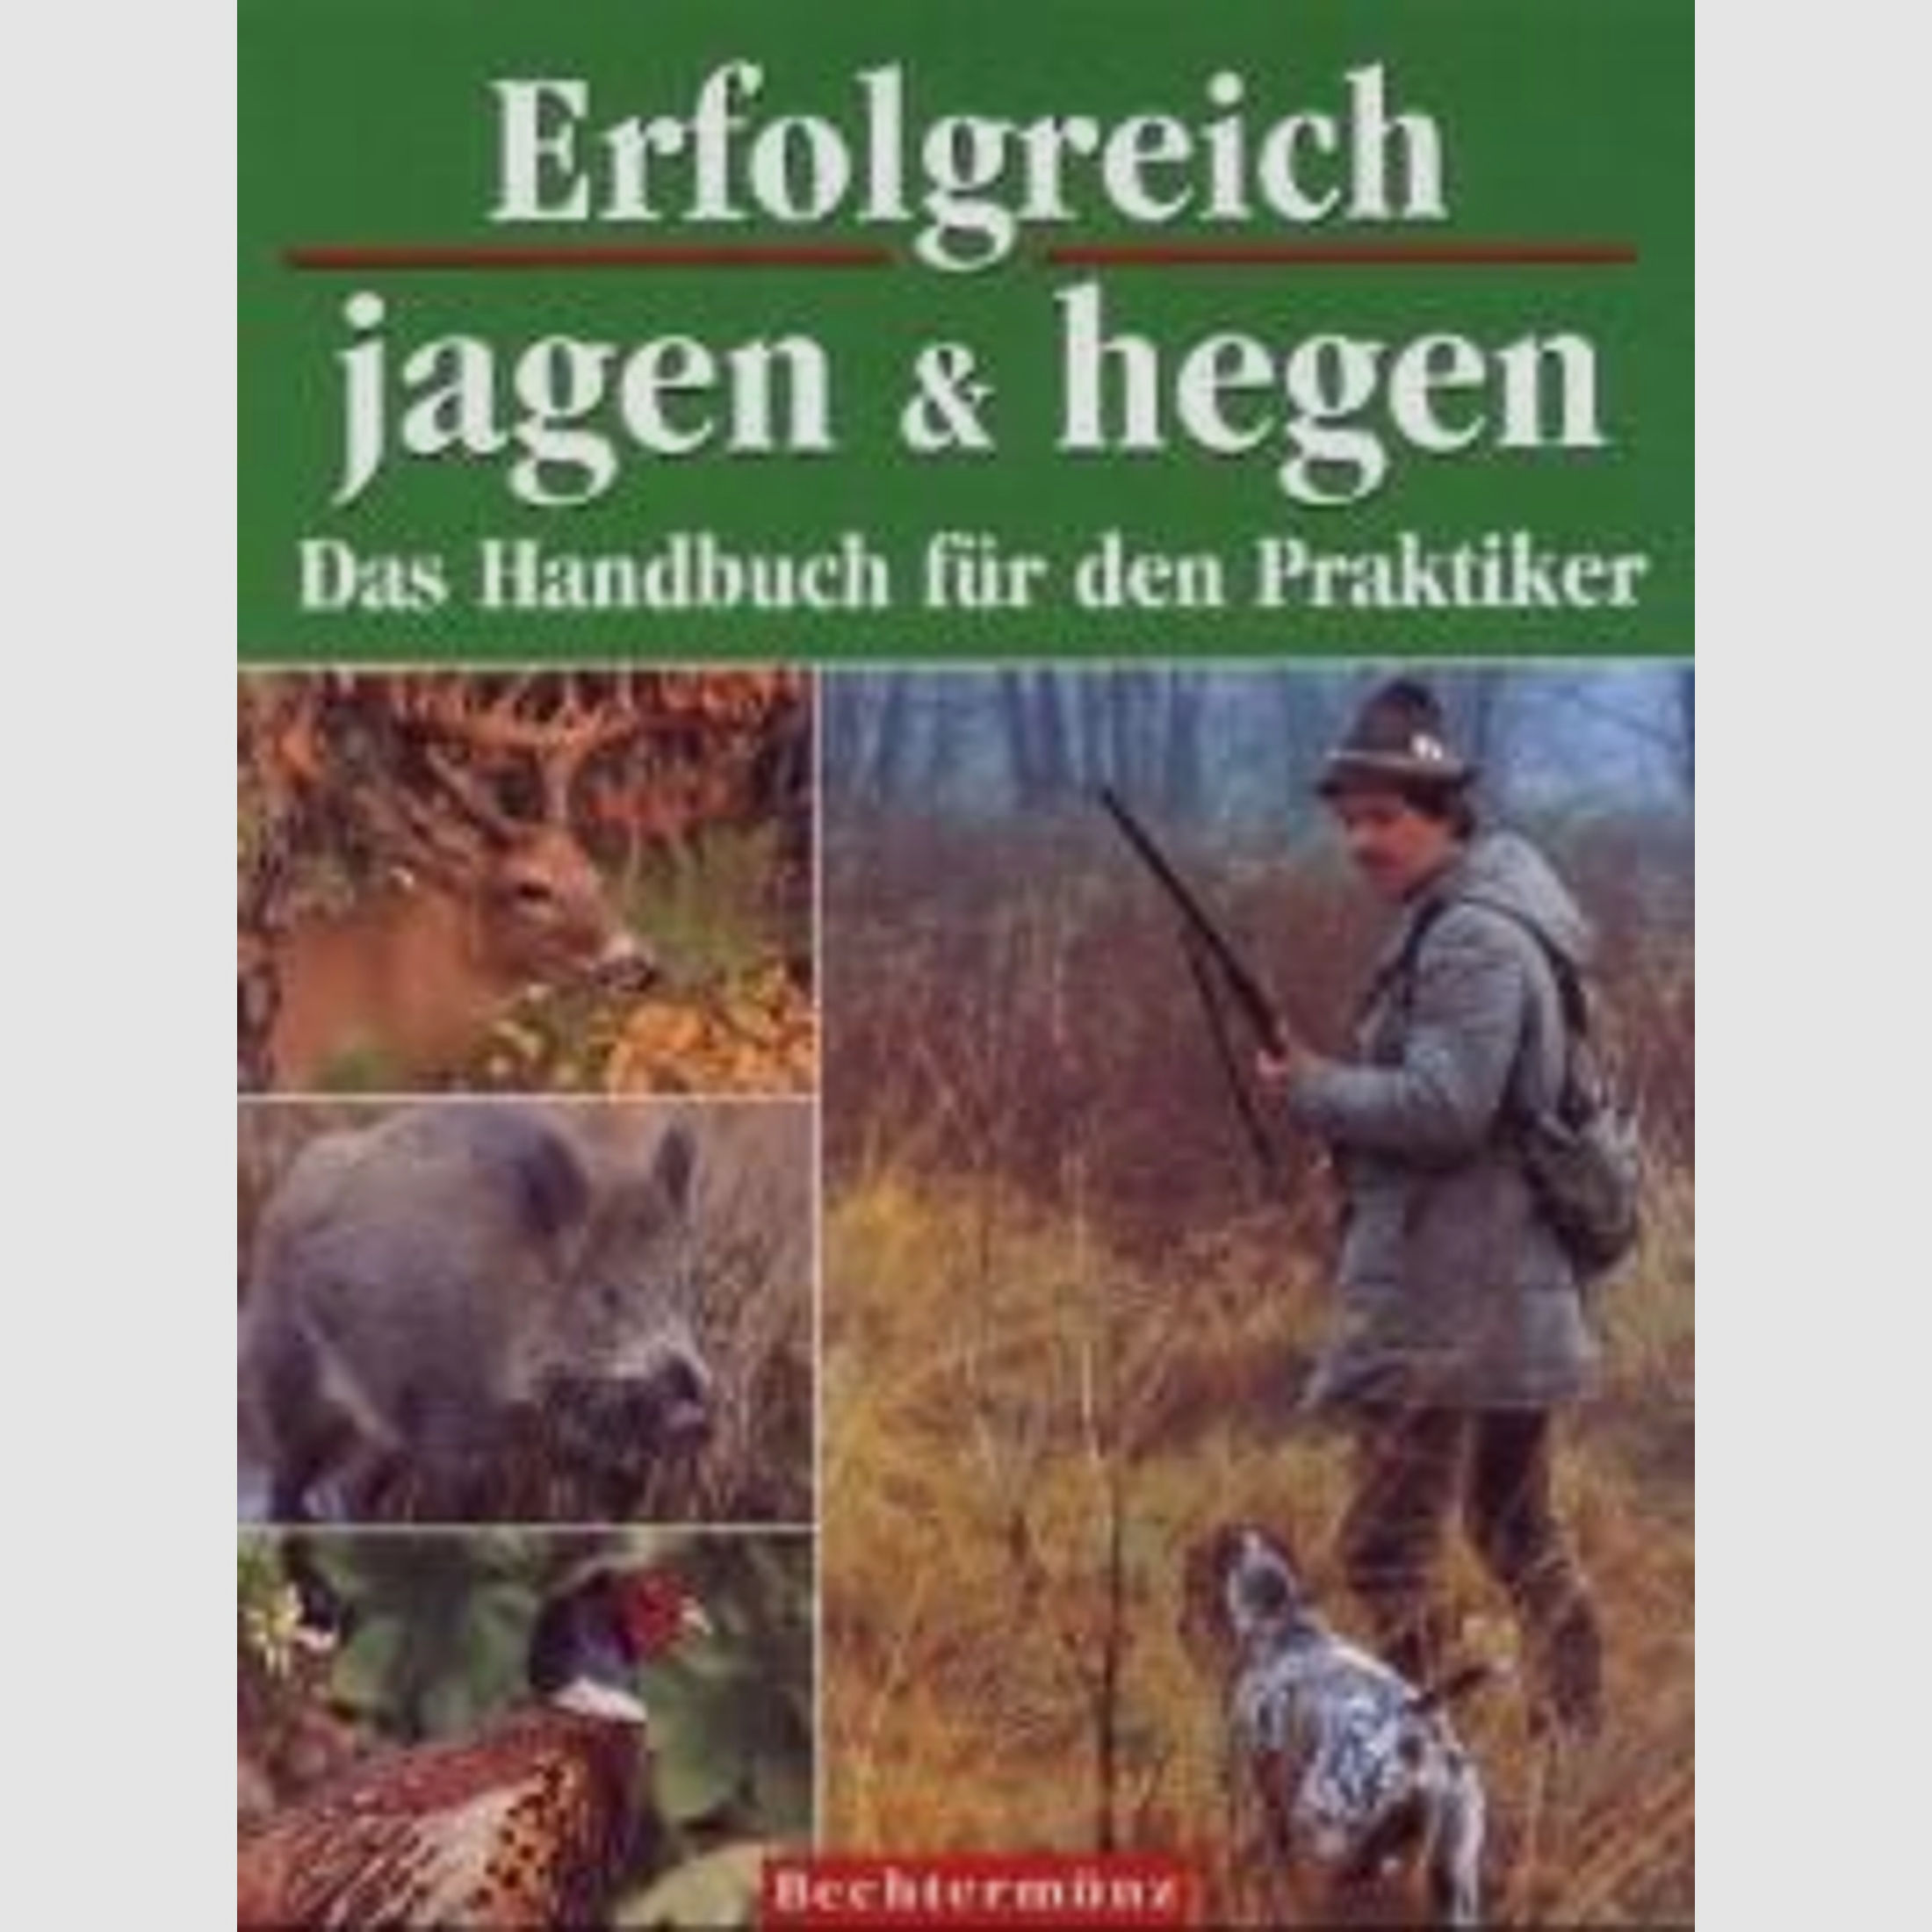 Erfolgreich jagen & hegen: Das Handbuch für den Praktiker (Deutsch) Gebundene Ausgabe – 1. Januar 2002